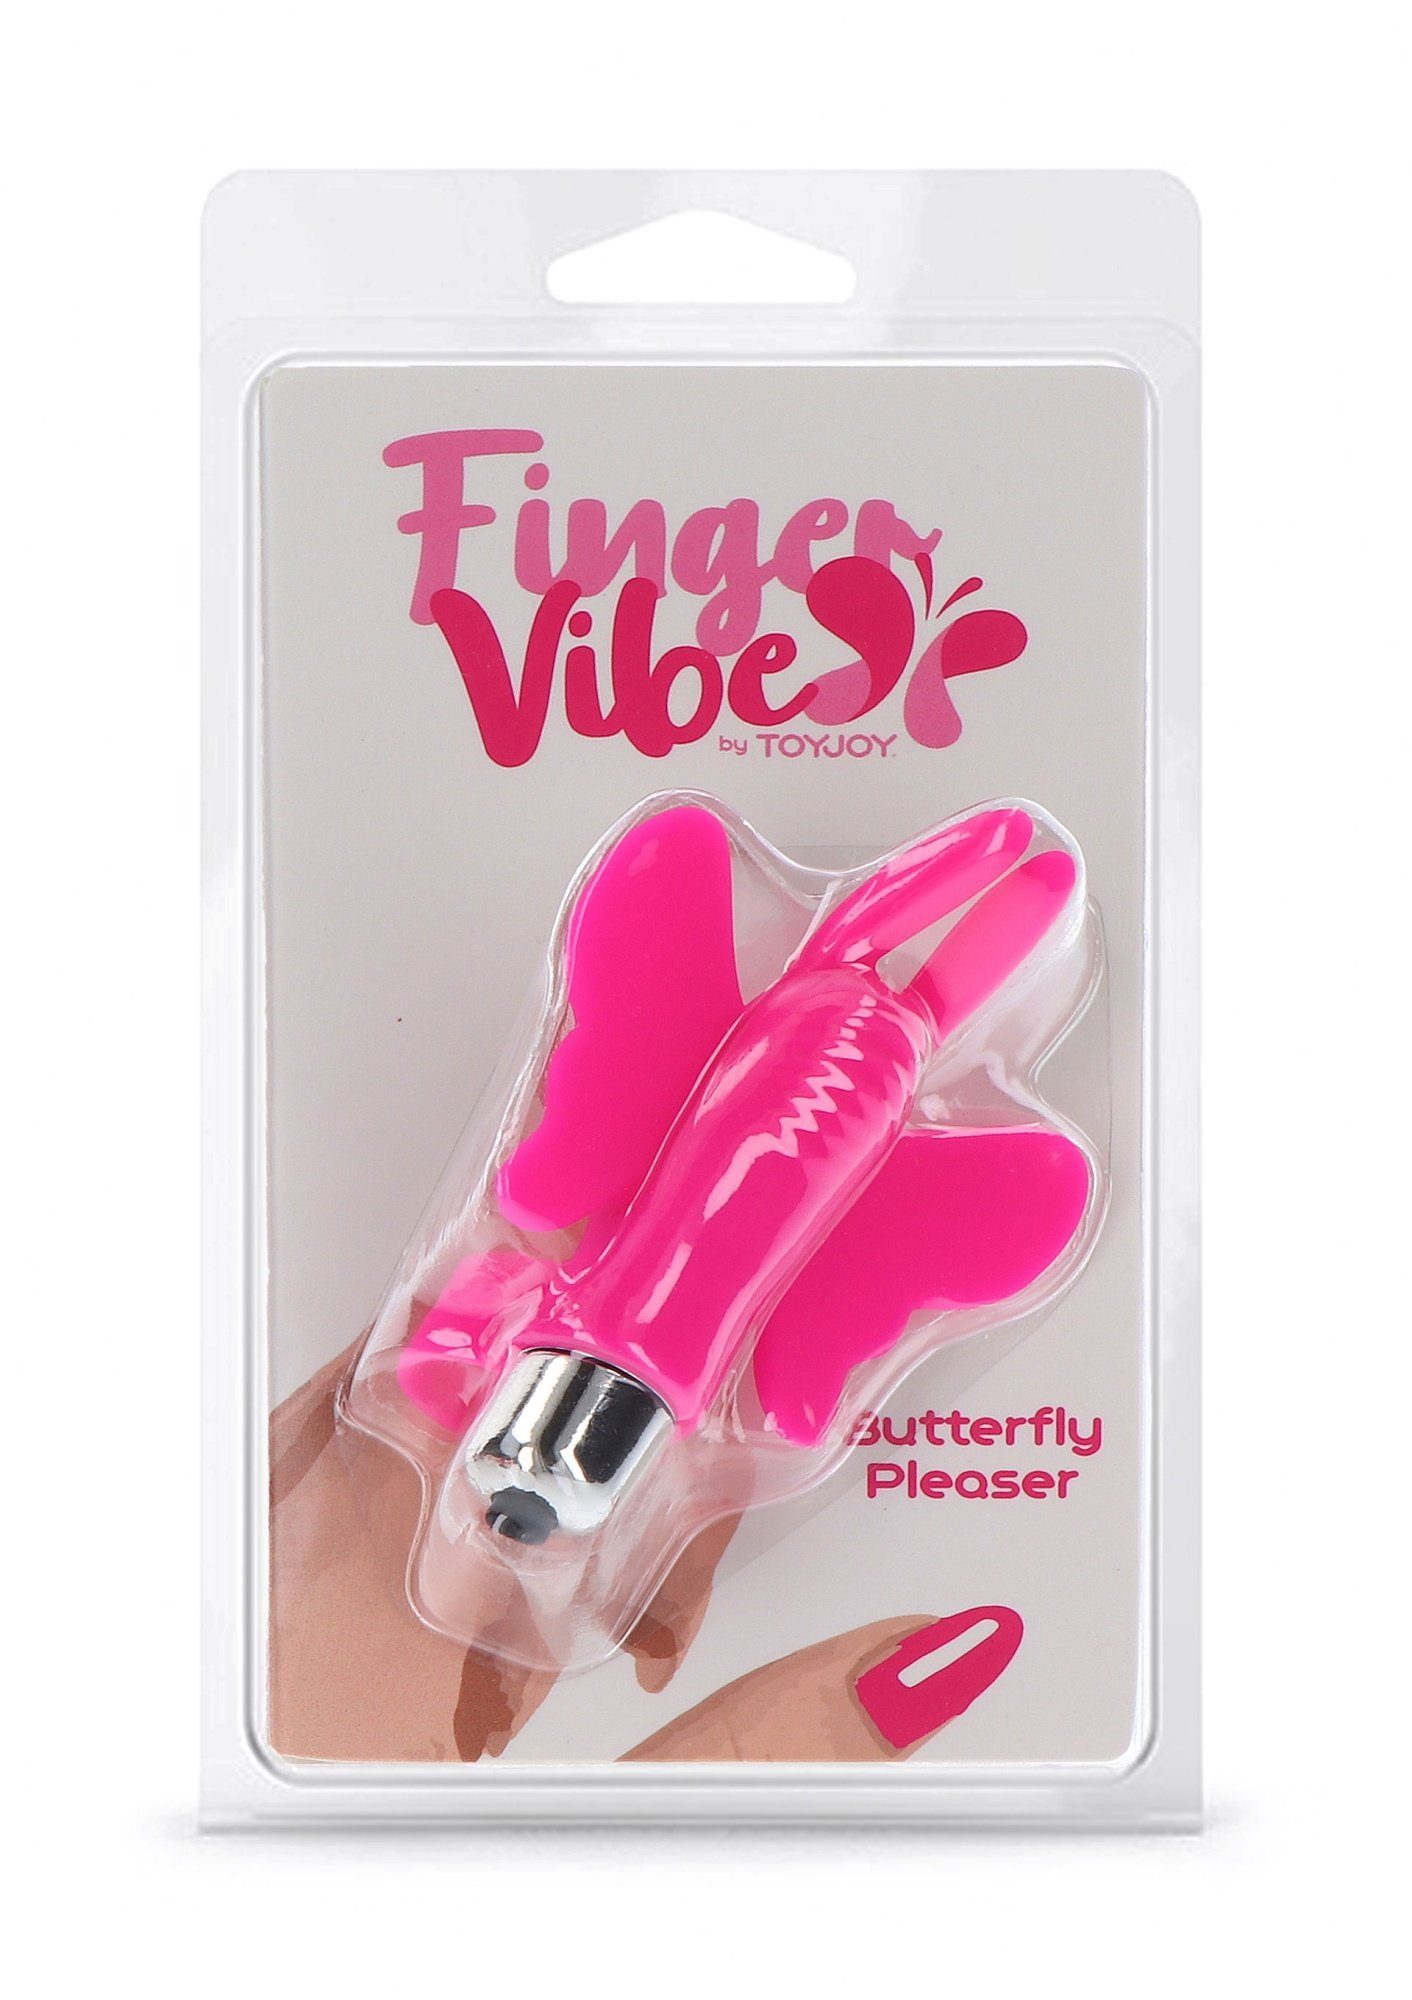 TOYJOY Finger-Vibrator Pleaser Butterfly Finger-Vibrator